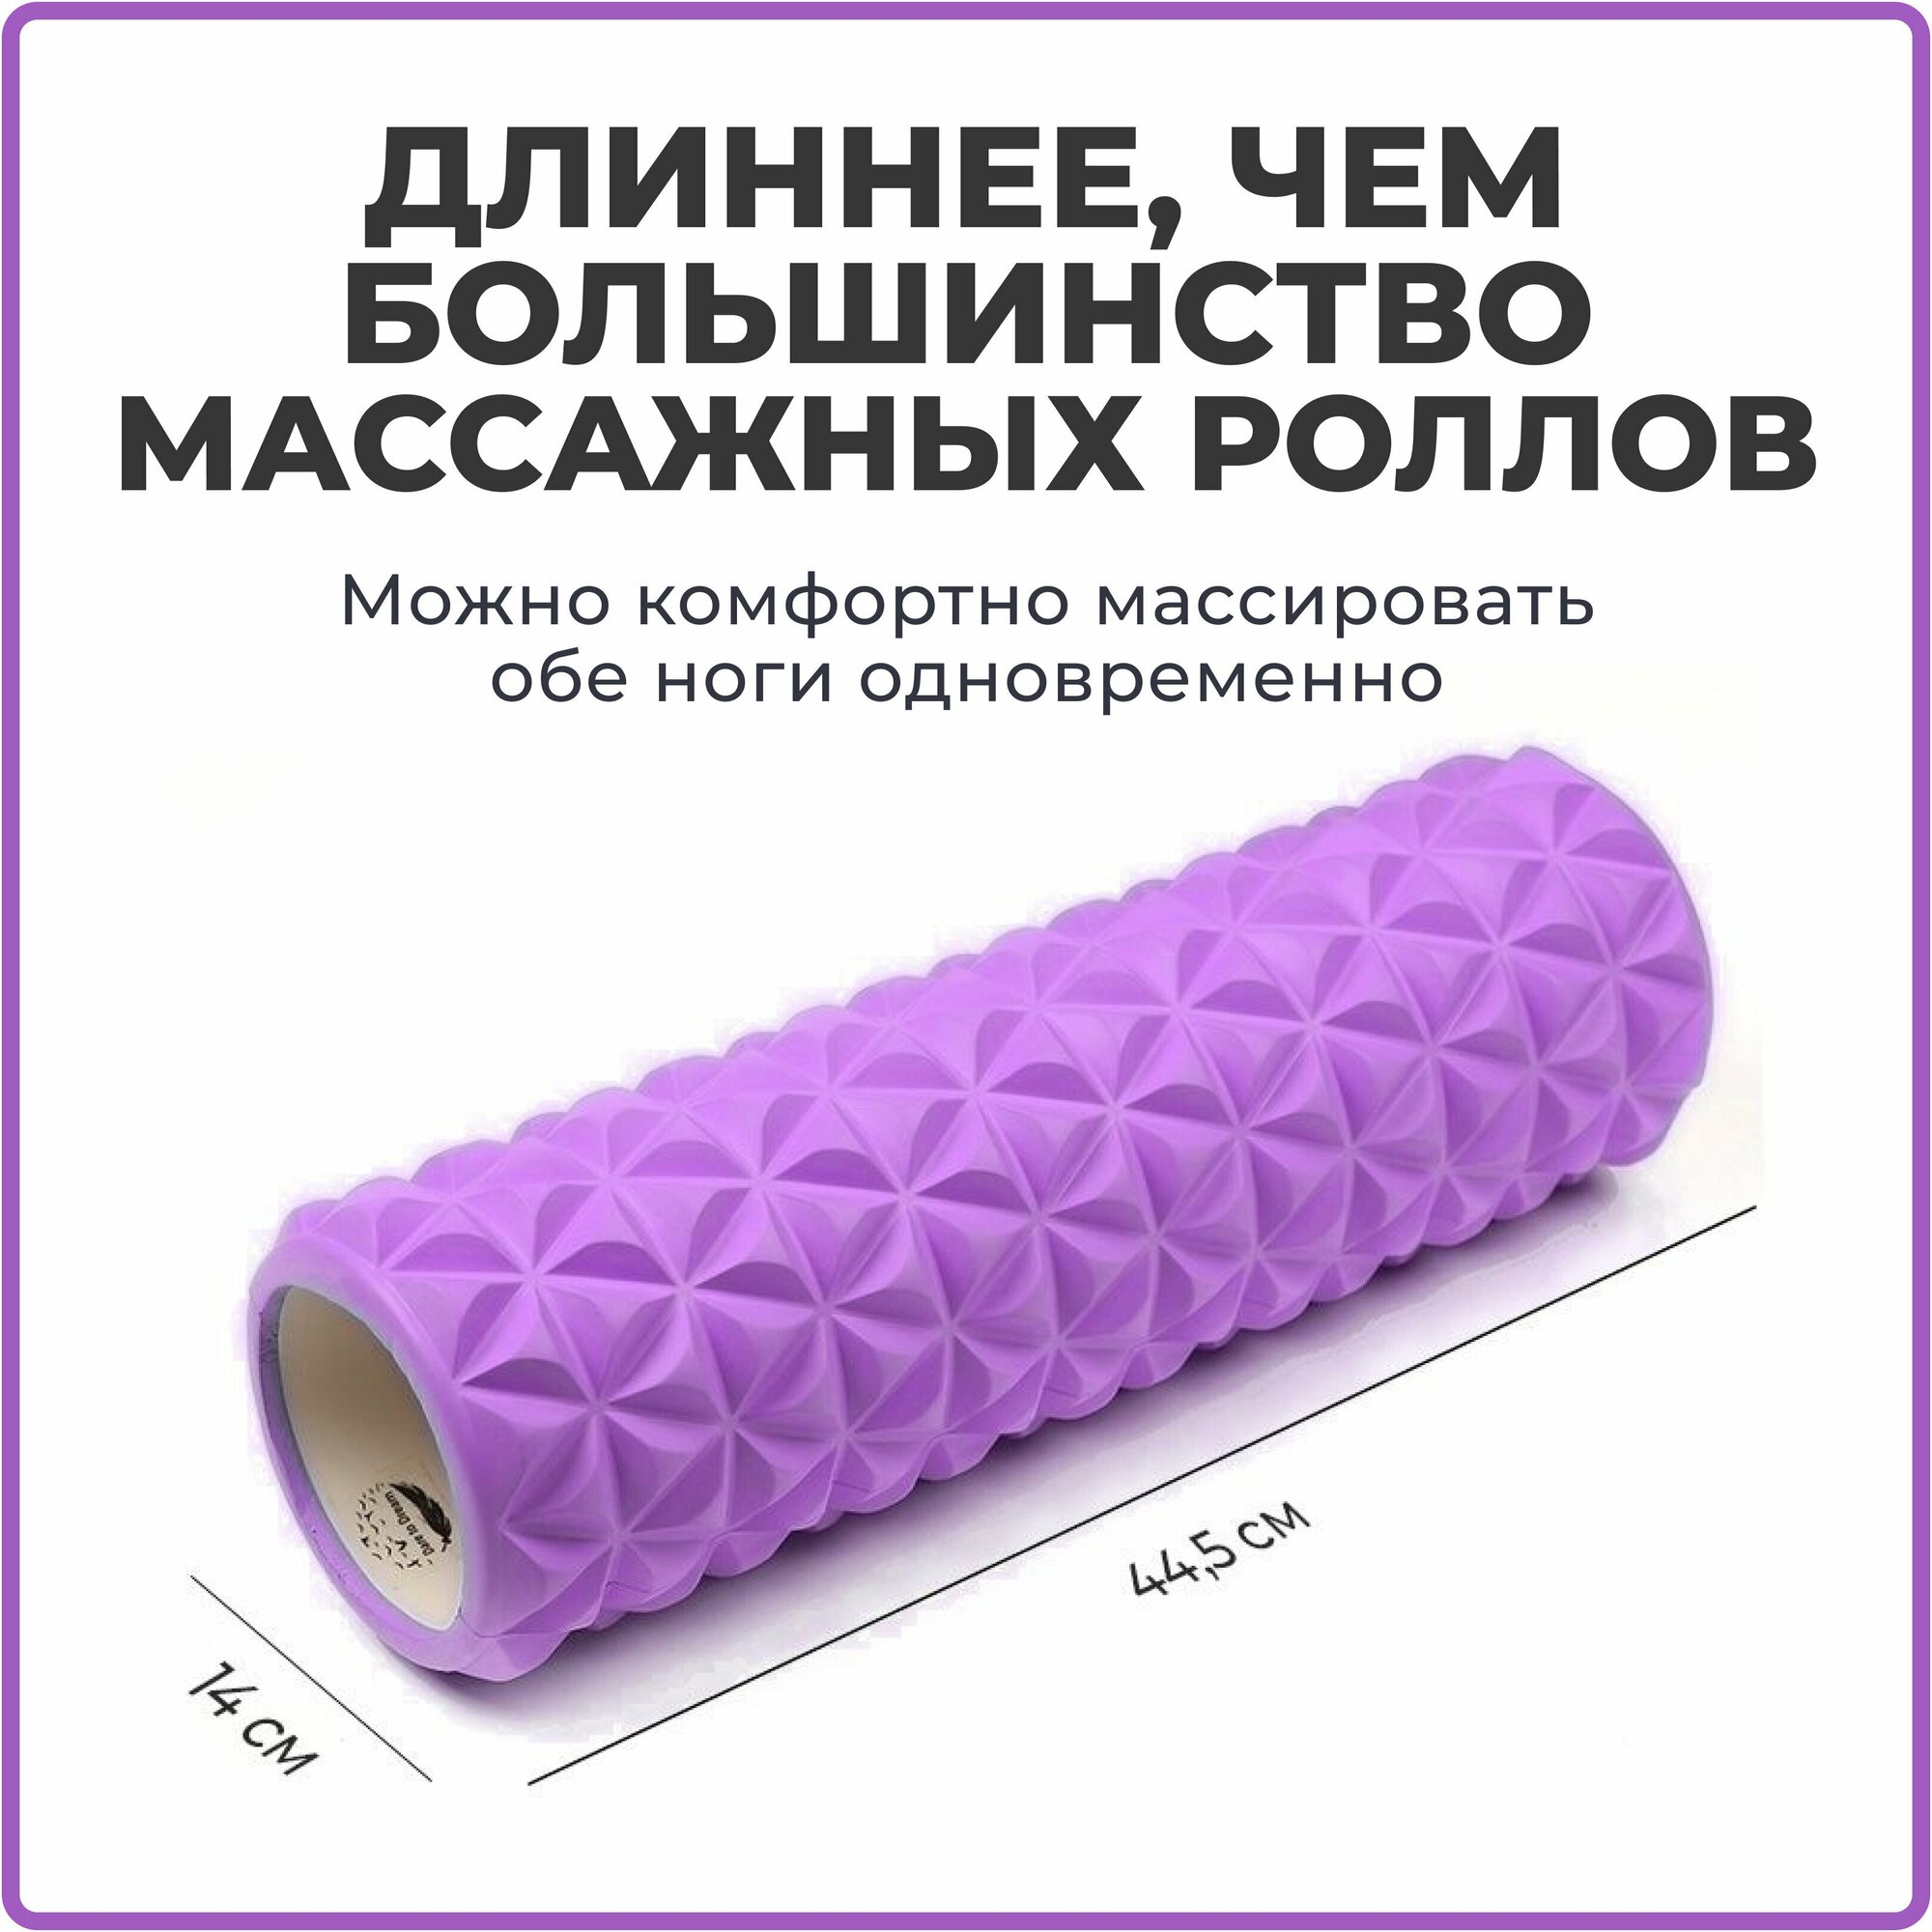 Ролик массажный 45 см для йоги, фитнеса, пилатеса и МФР, фиолетовый. Ролл для МФР, валик для спины, МФР ролл, массажер для спины